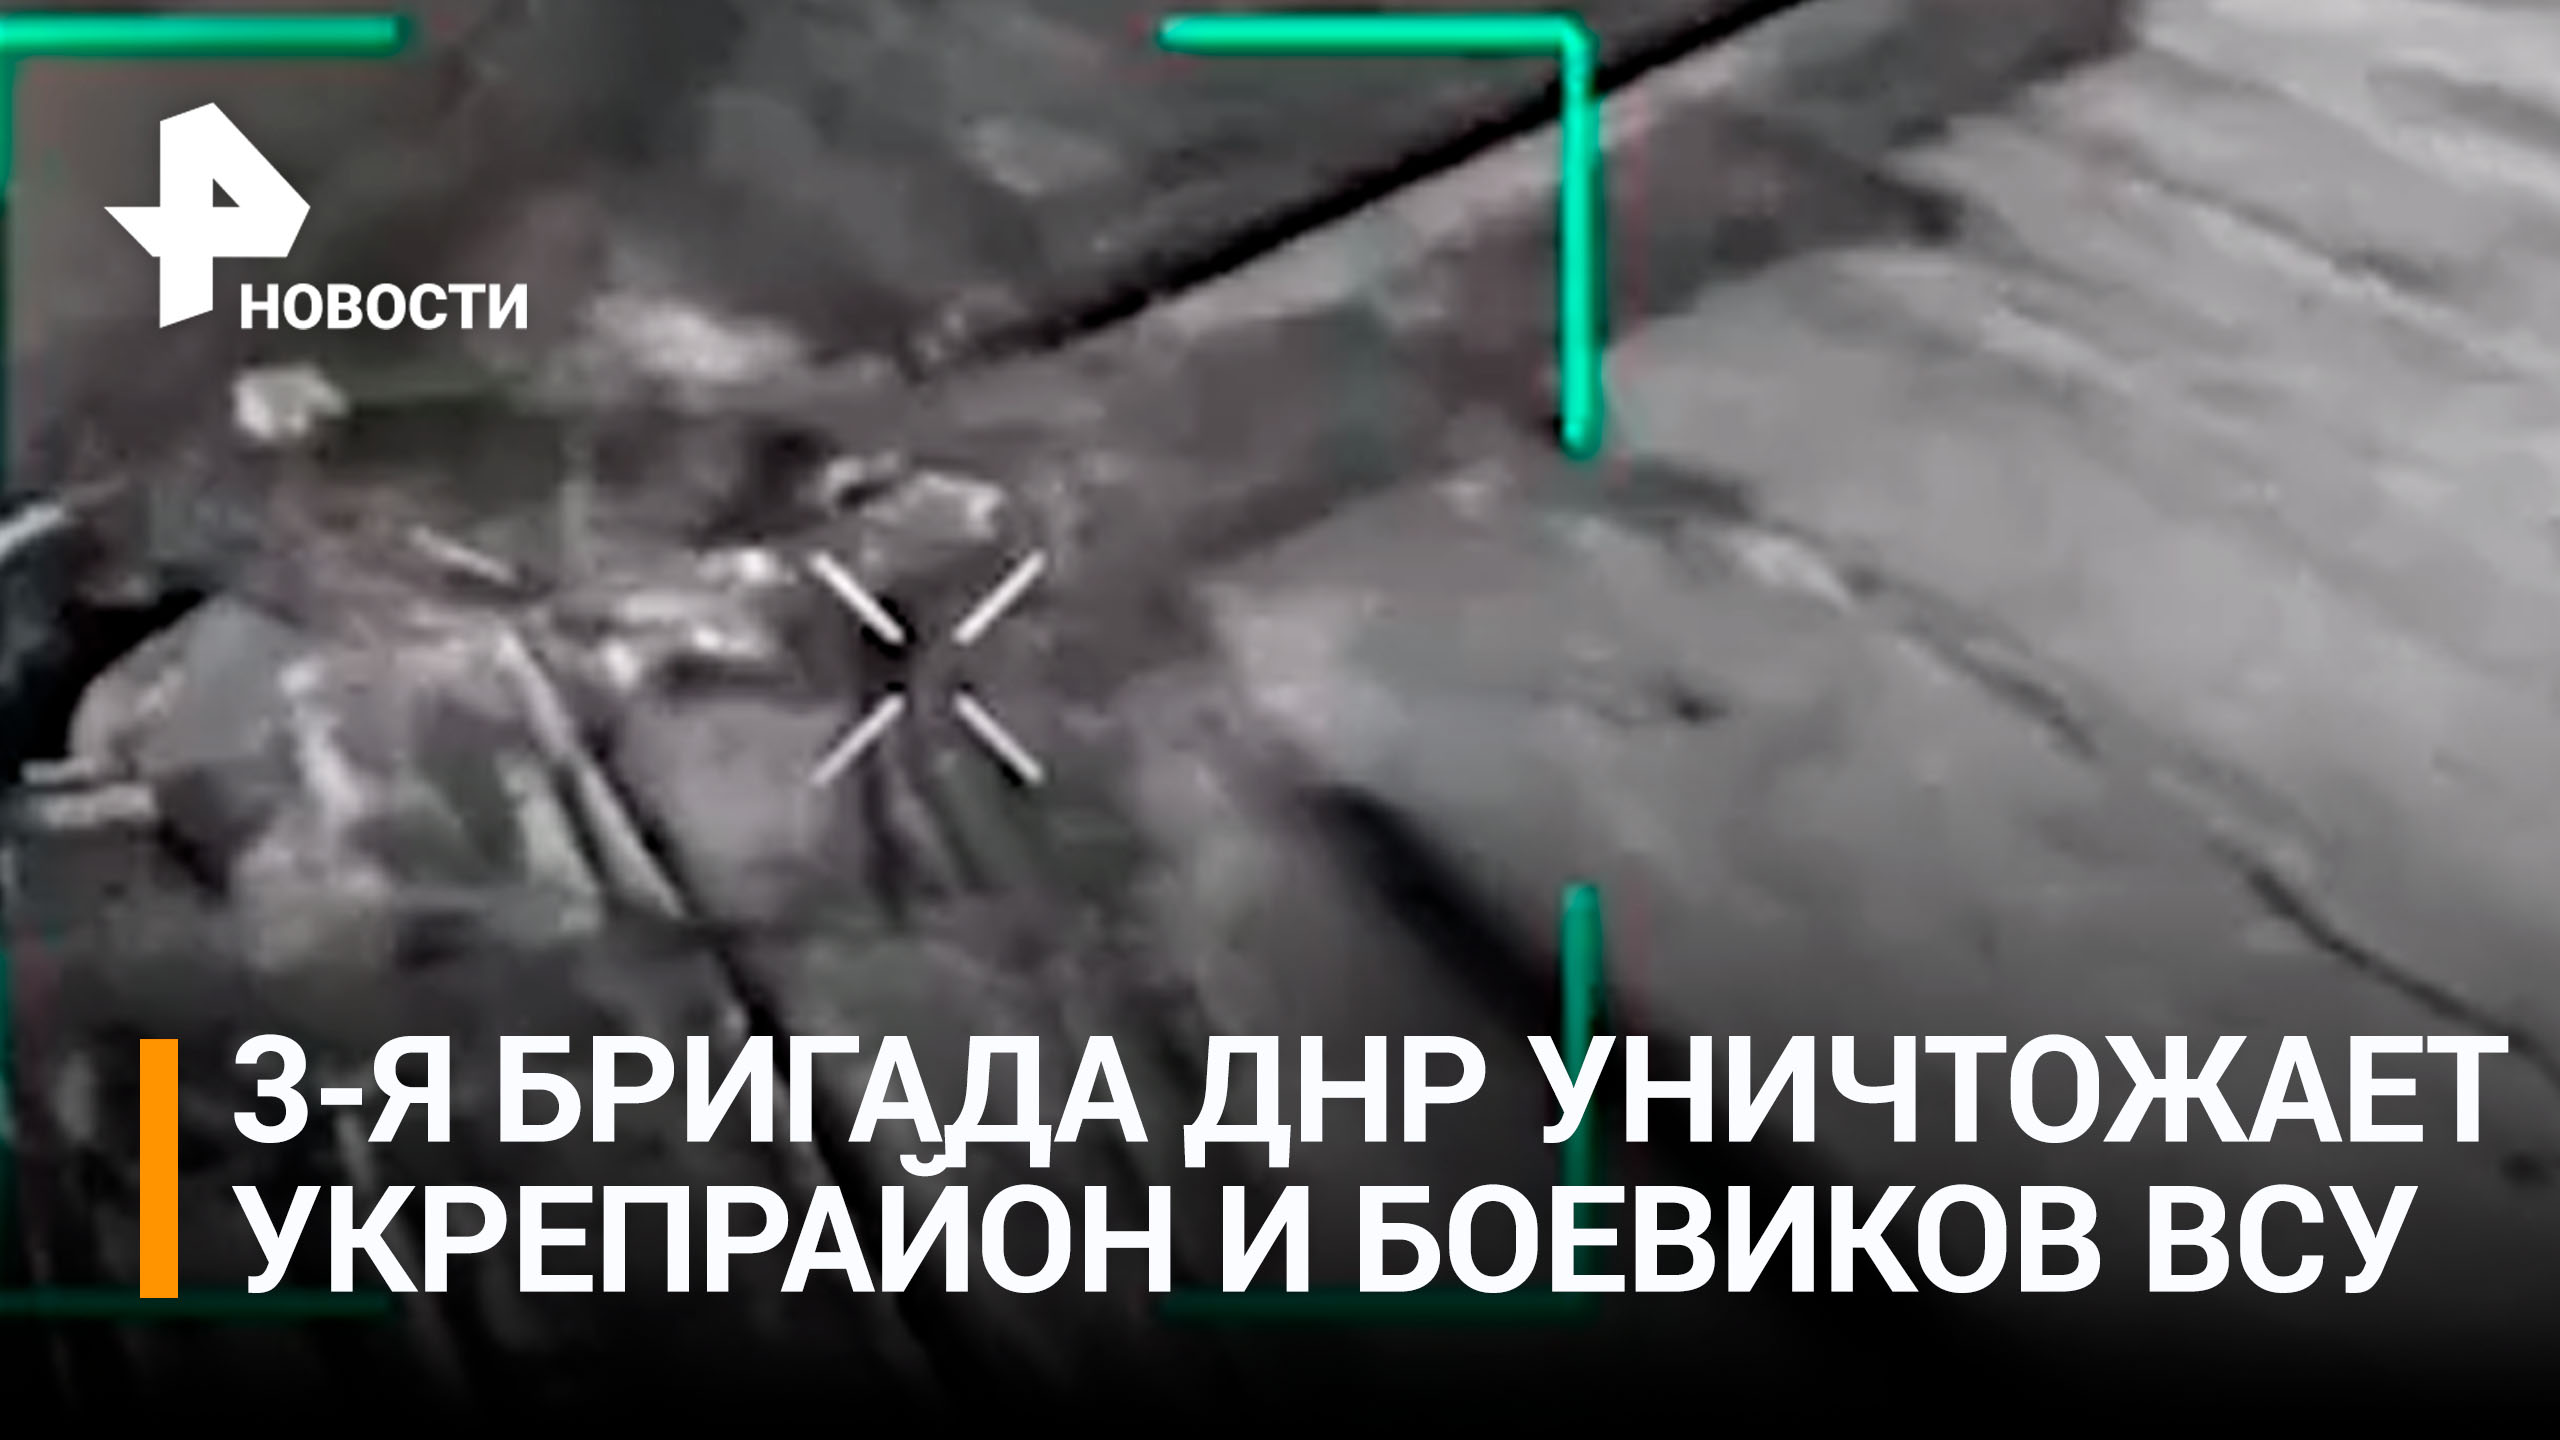 Зоркий глаз дронов достаёт боевиков из-под земли: разнесли укрепрайон нацистов в пух и прах